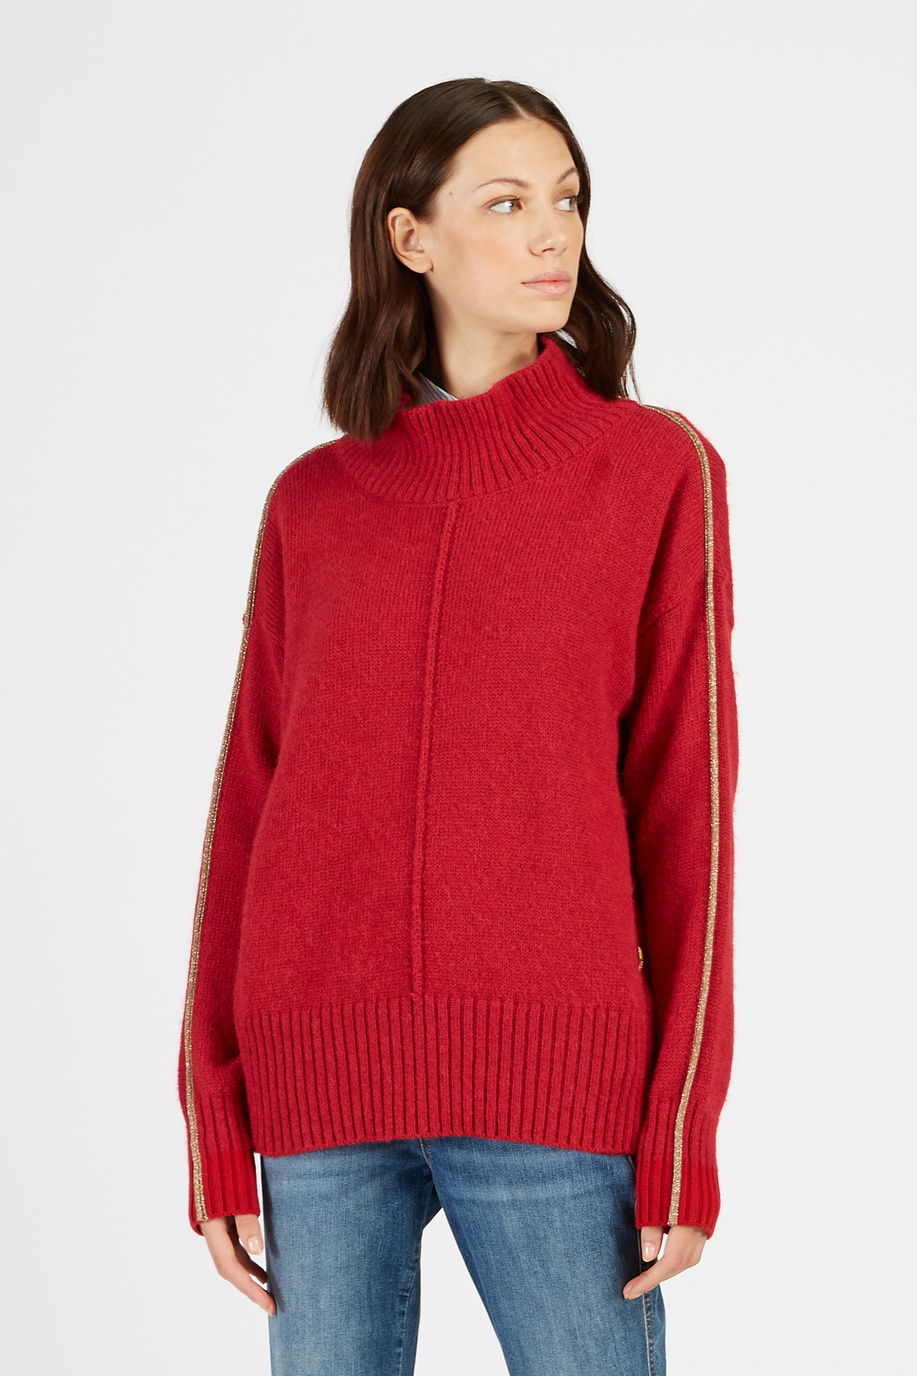 Damen-Pullover aus Alpaka mit hohem Kragen - Eleganter Look für sie | La Martina - Official Online Shop